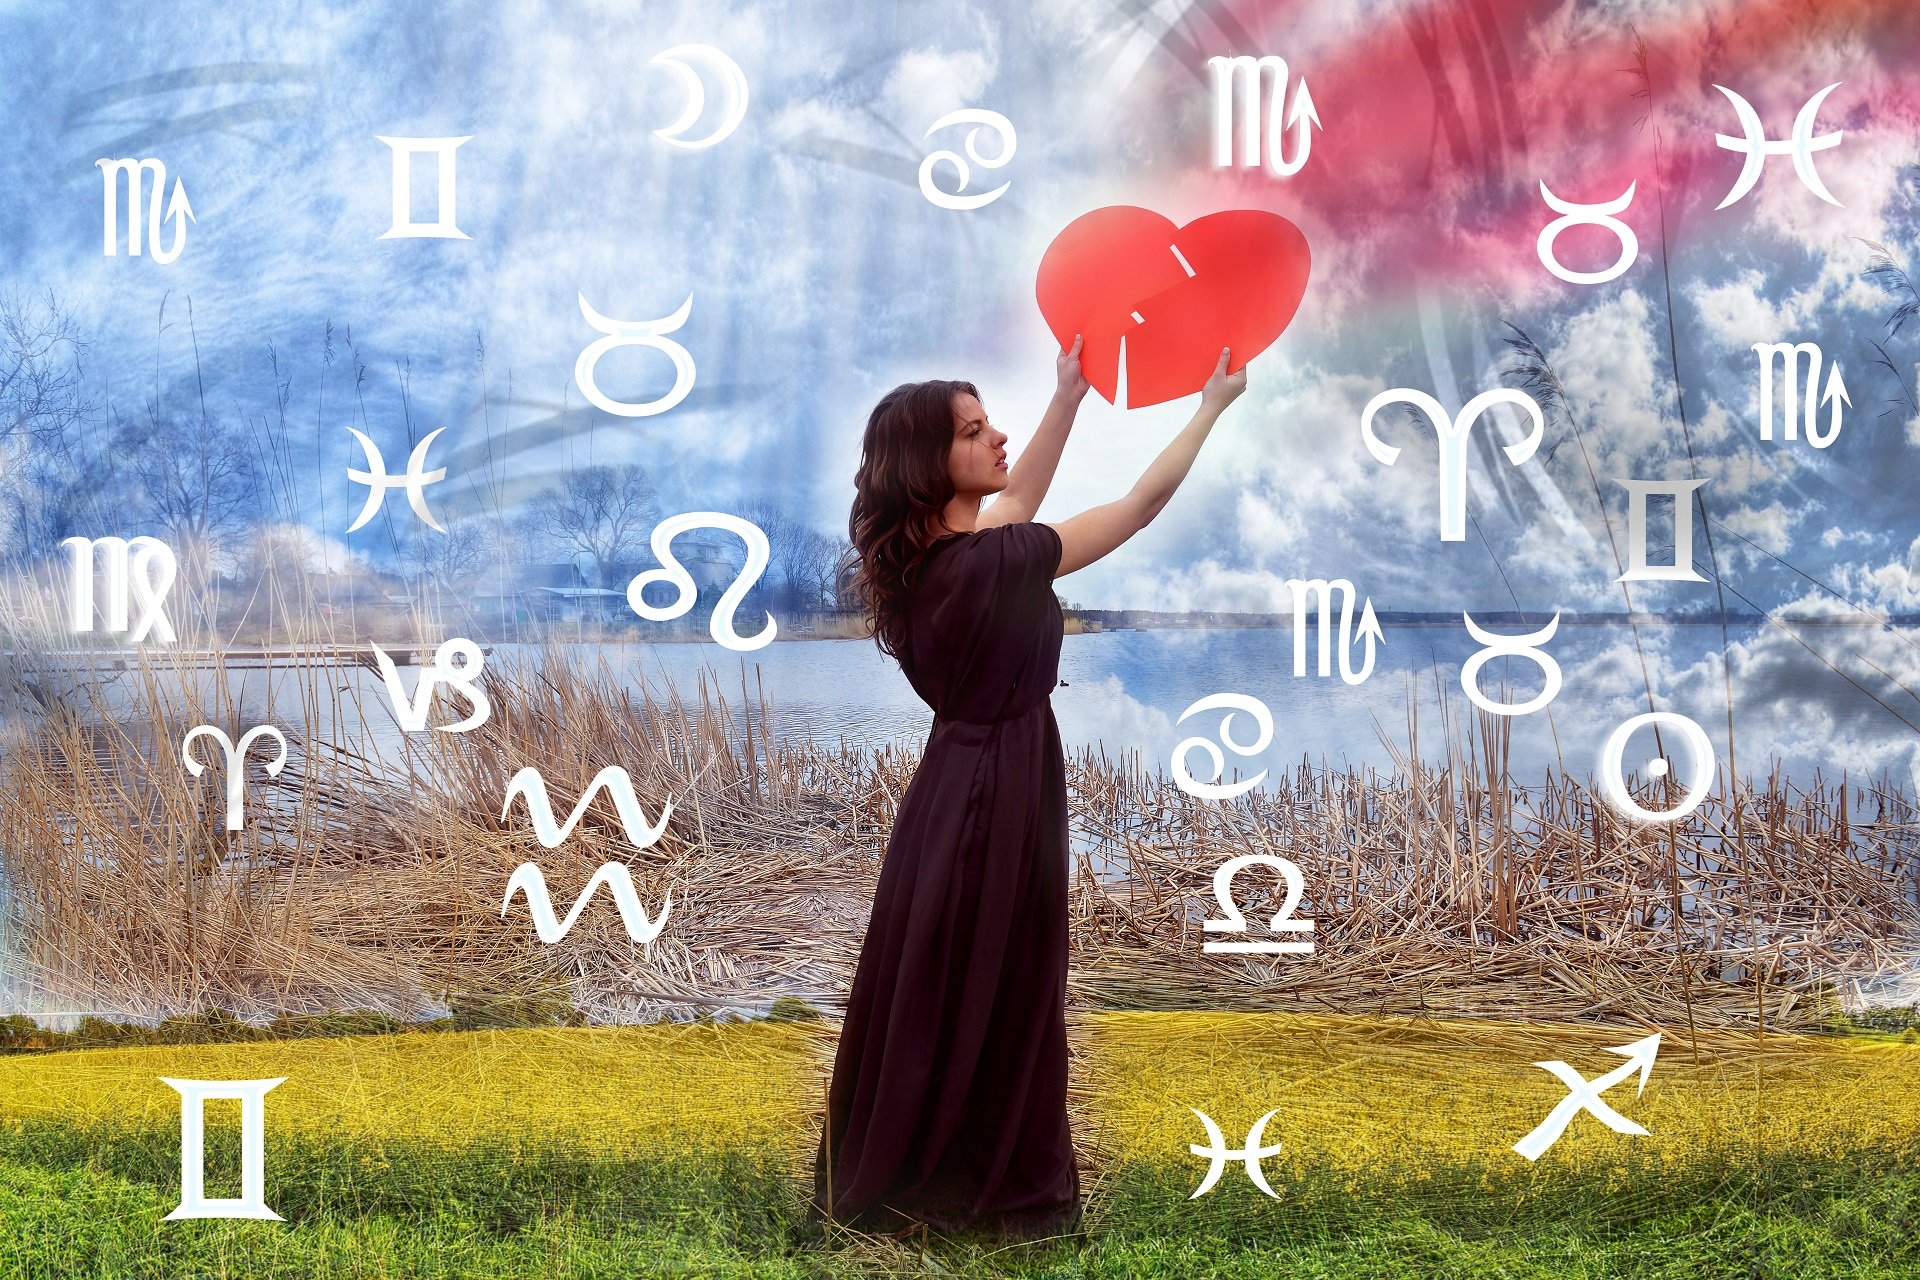 Buscando el amor entre los signos || Fuente: Shutterstock